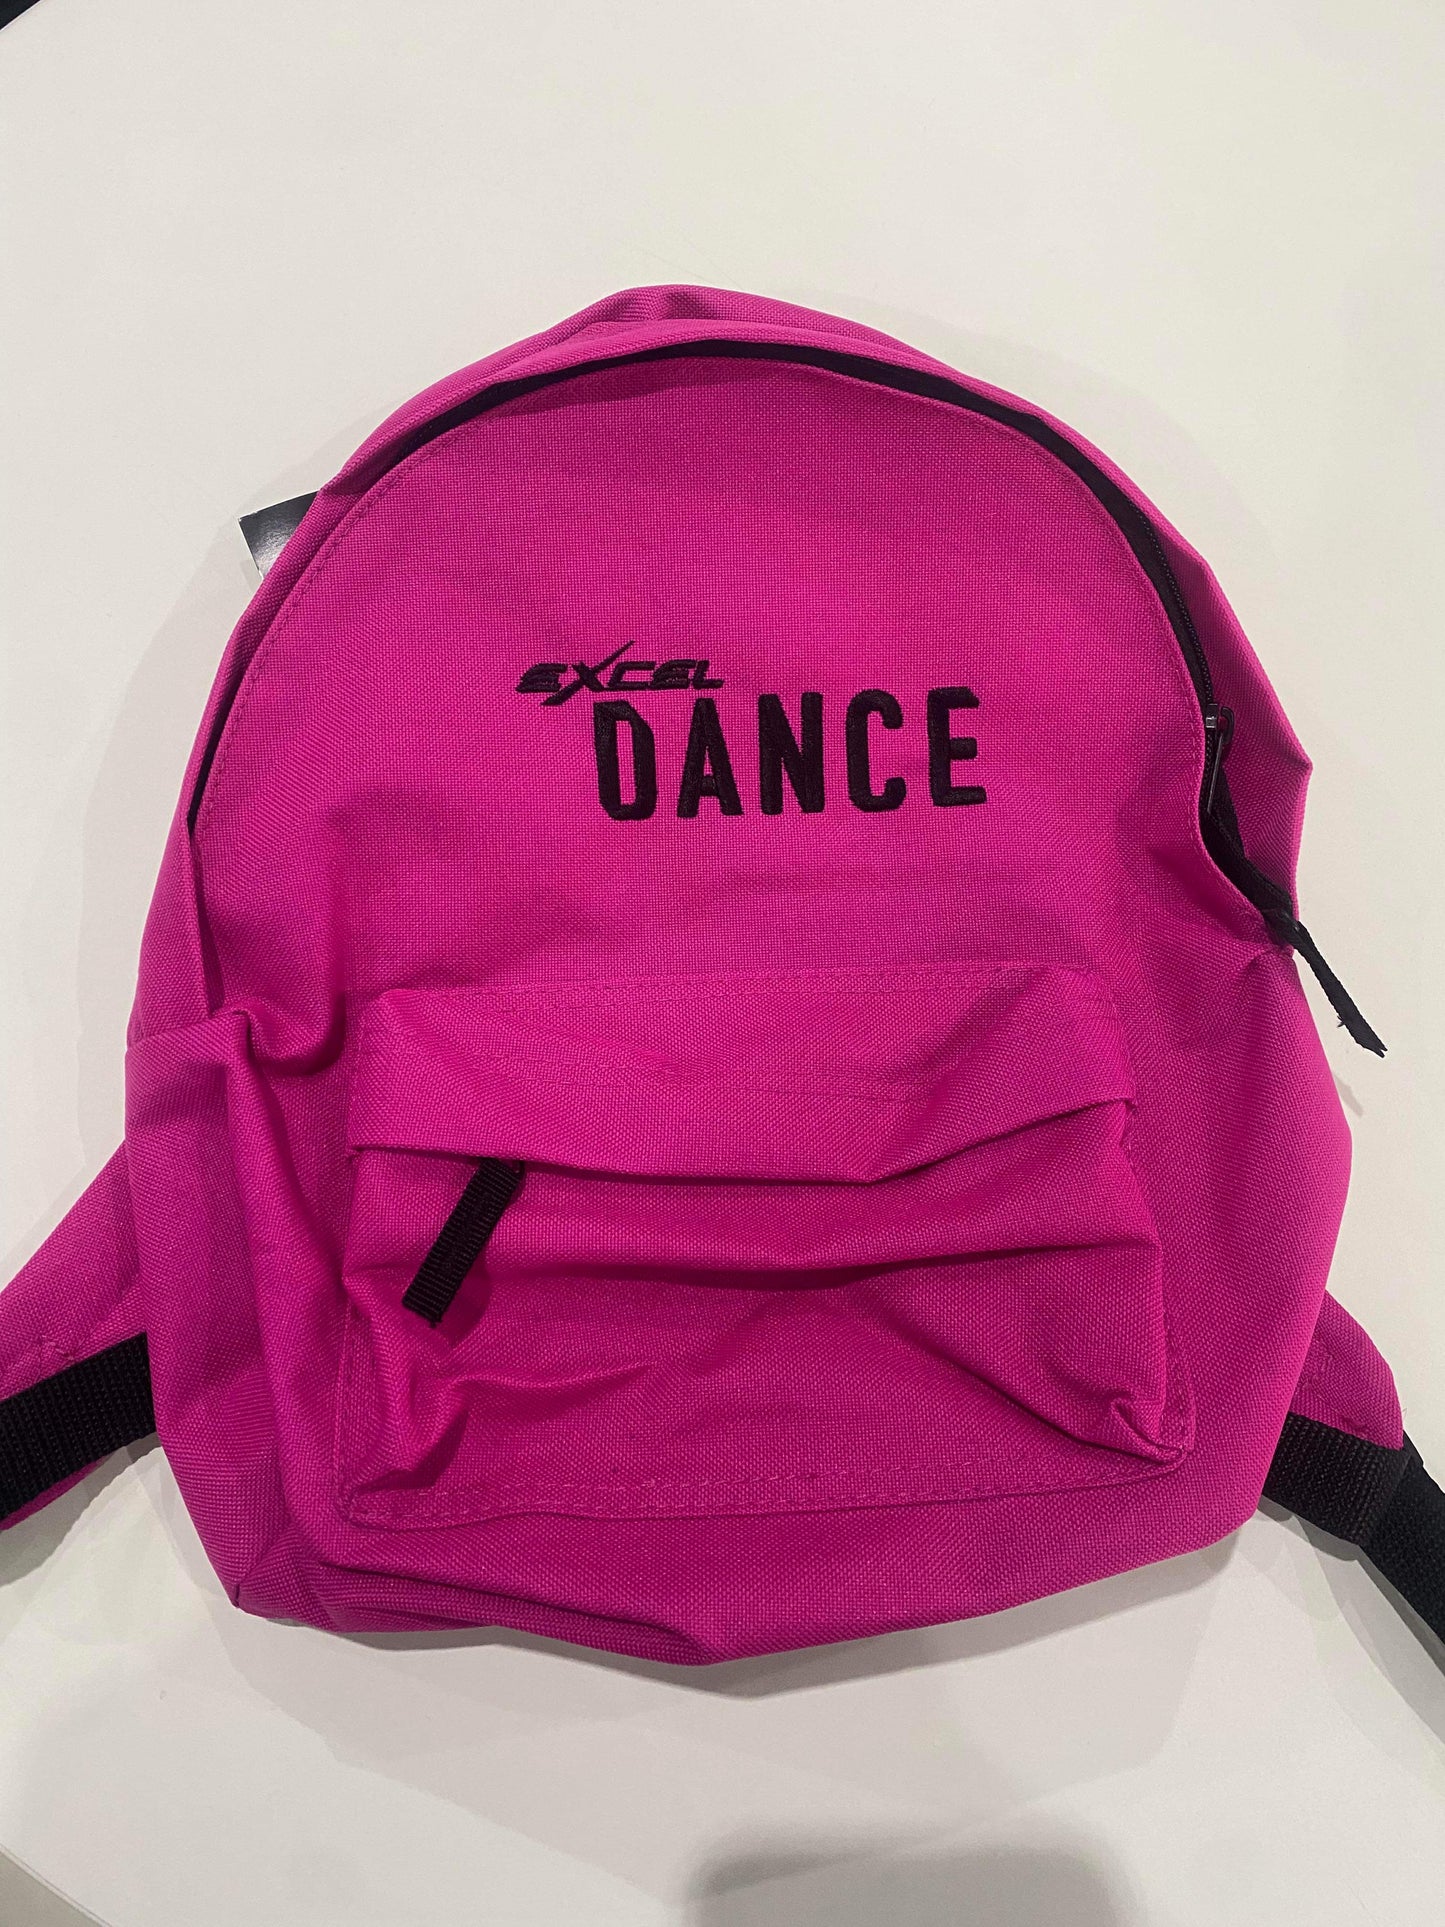 Excel Dance Backpack